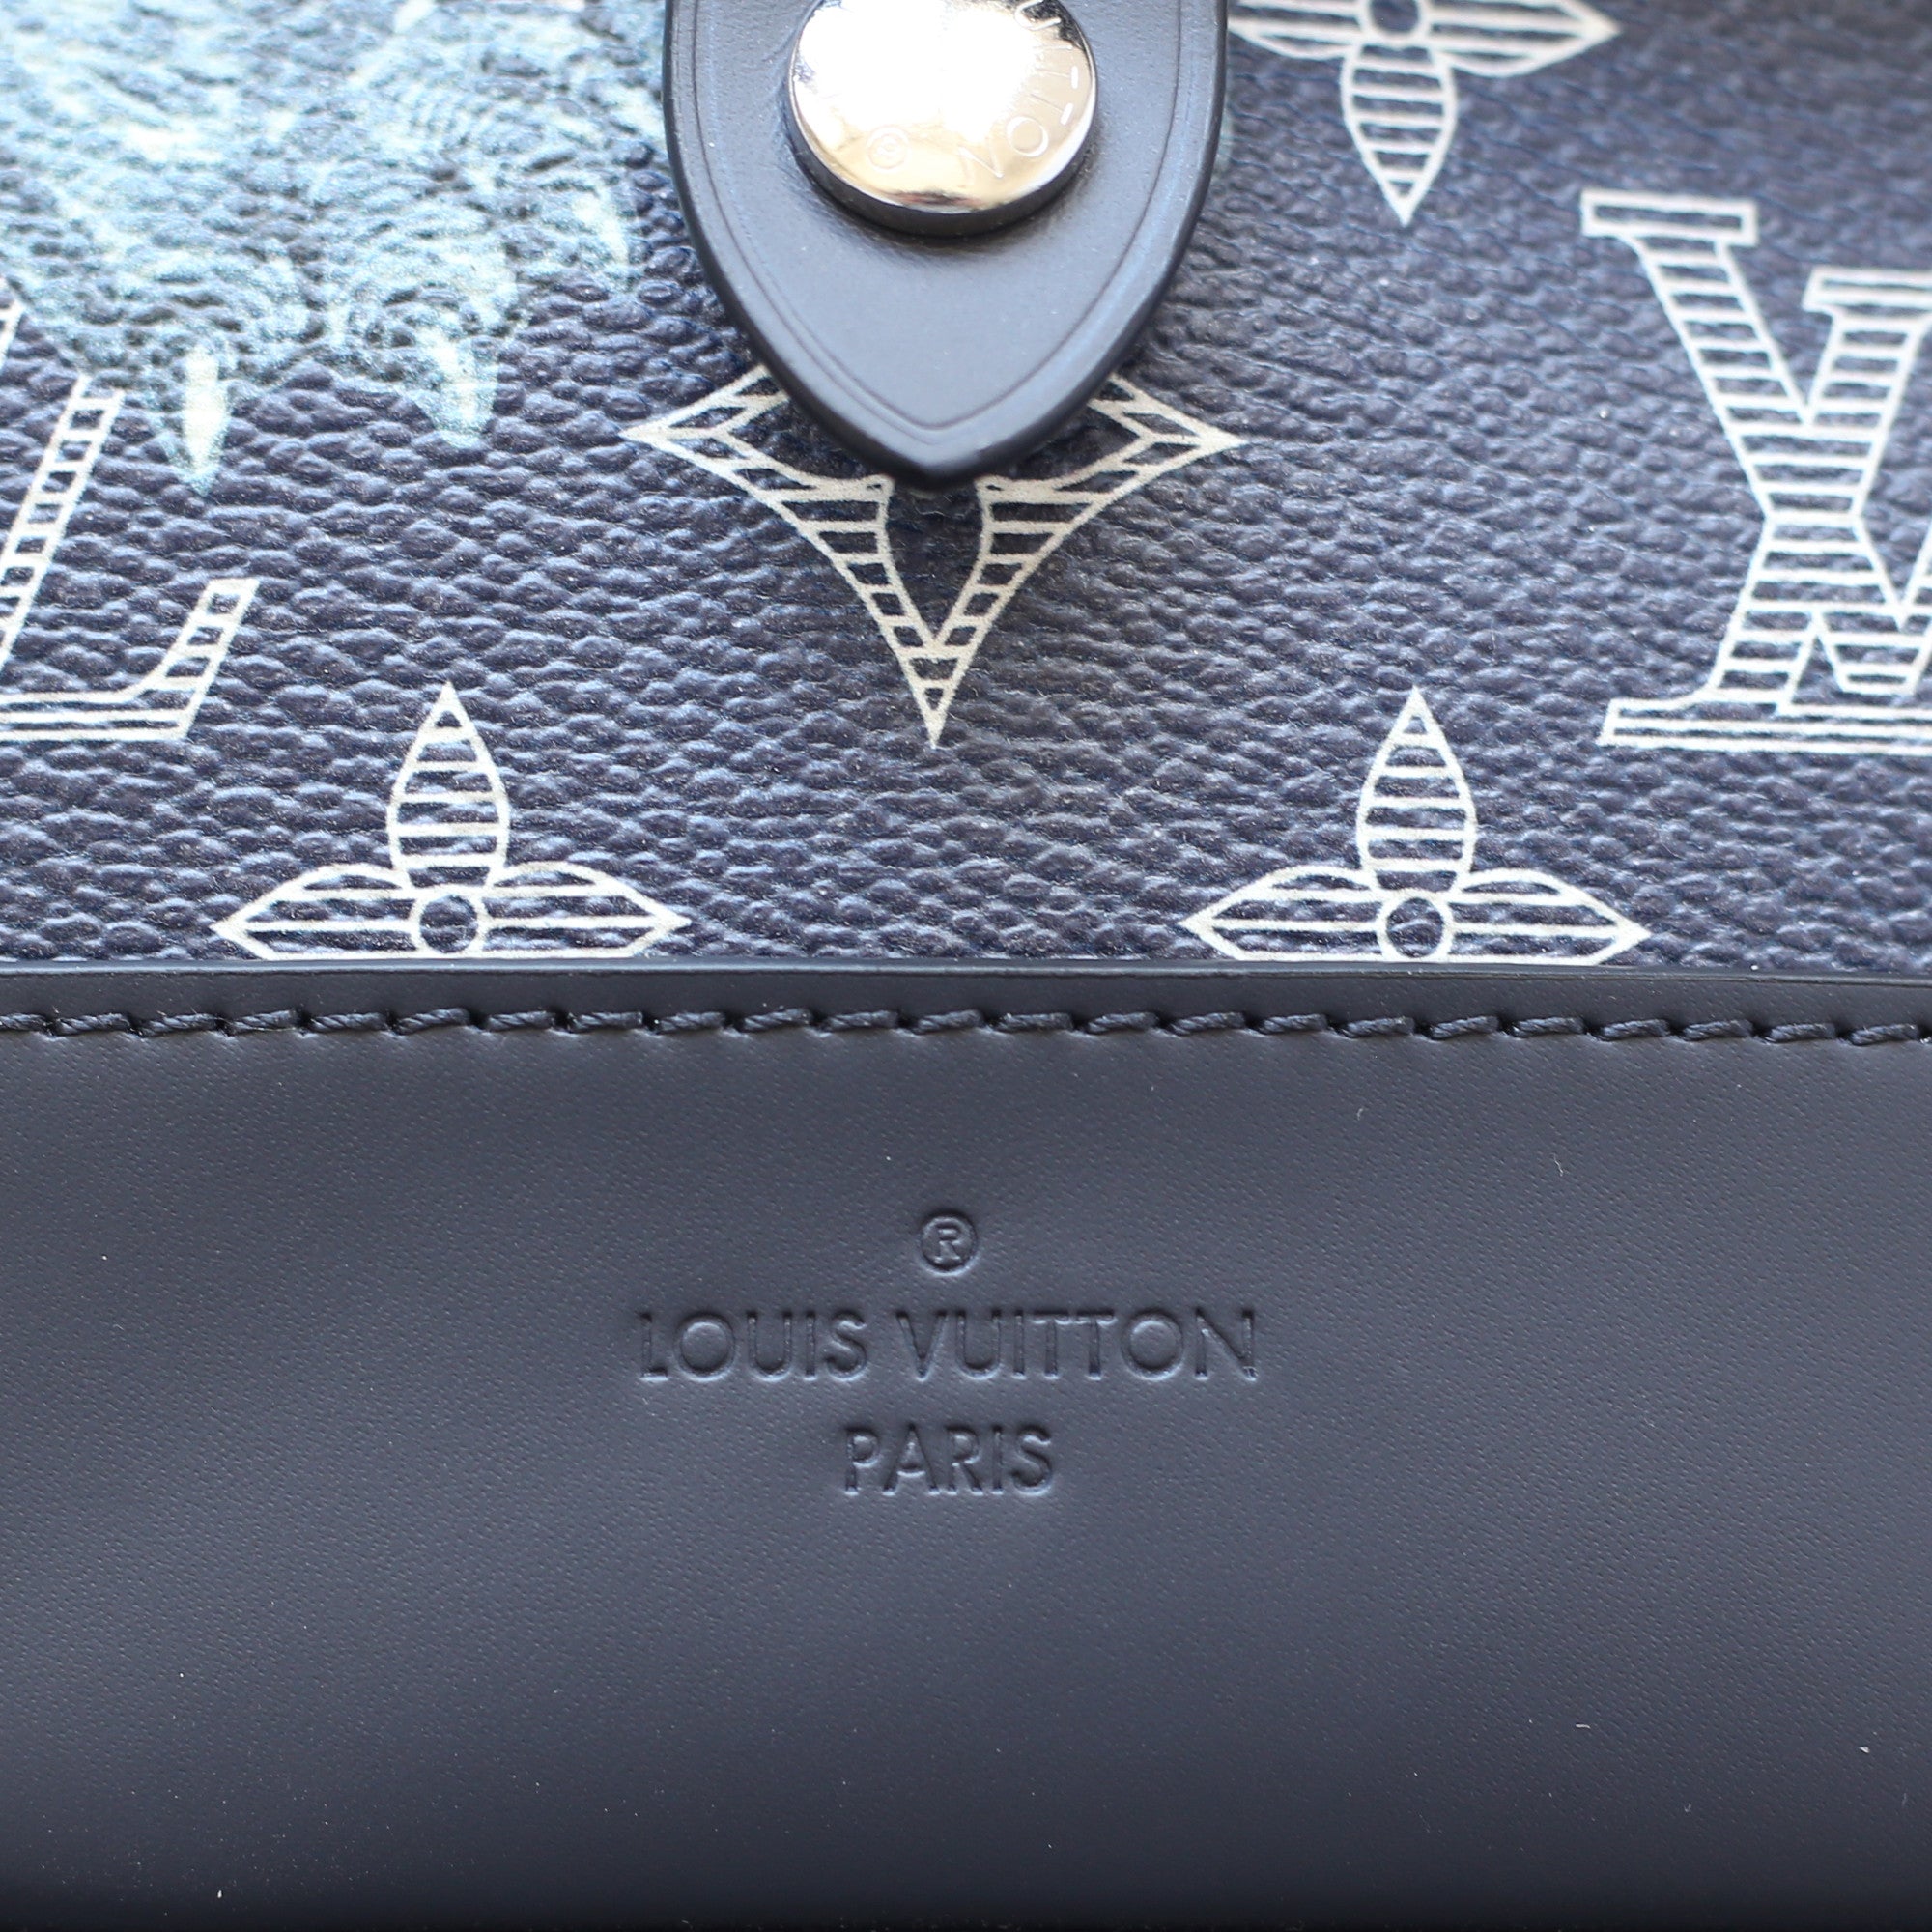 AUTHENTIC Louis Vuitton LV Savane Monogram Lion Chapman Men’s Size 9 (RARE)